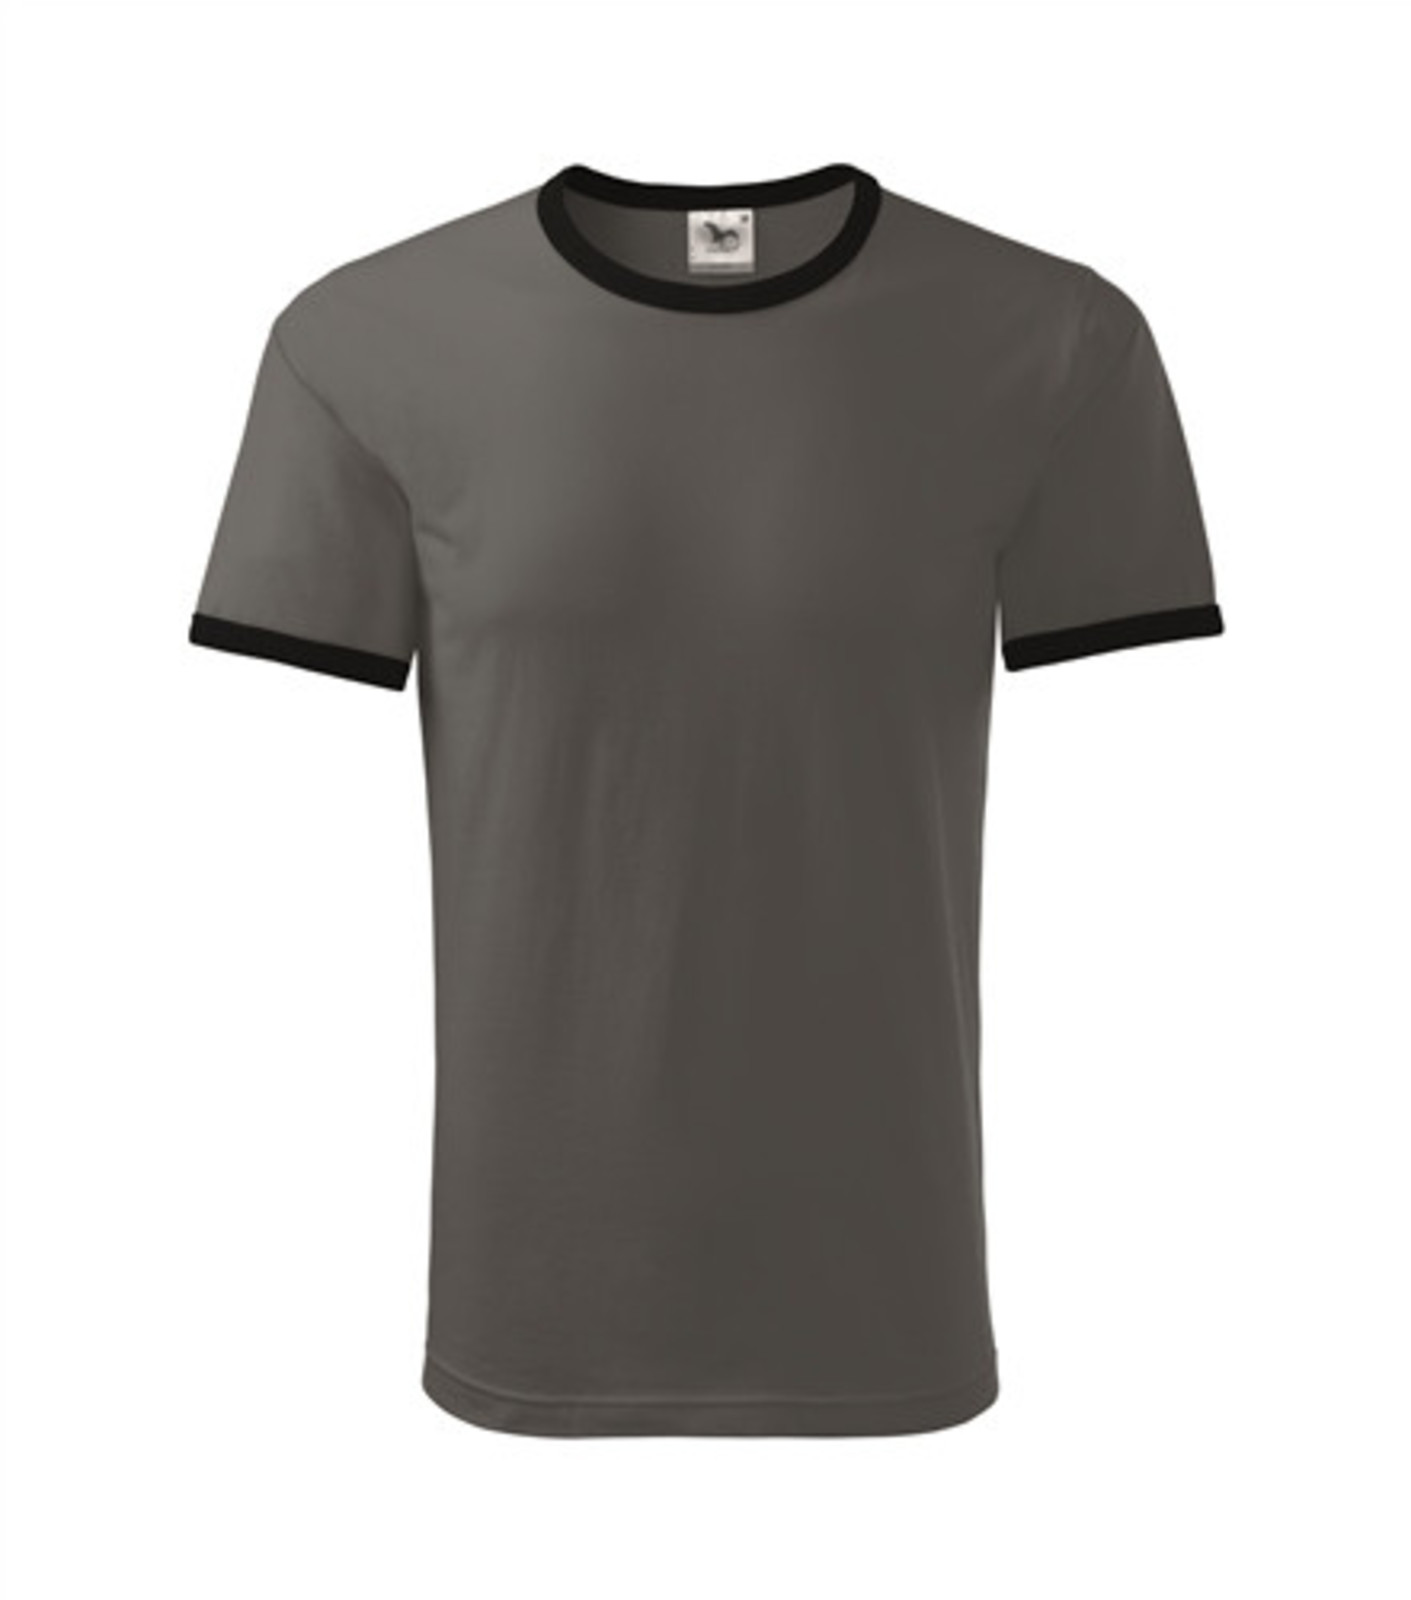 Unisex tričko Adler Infinity 131 - veľkosť: XXL, farba: bridlica/čierna